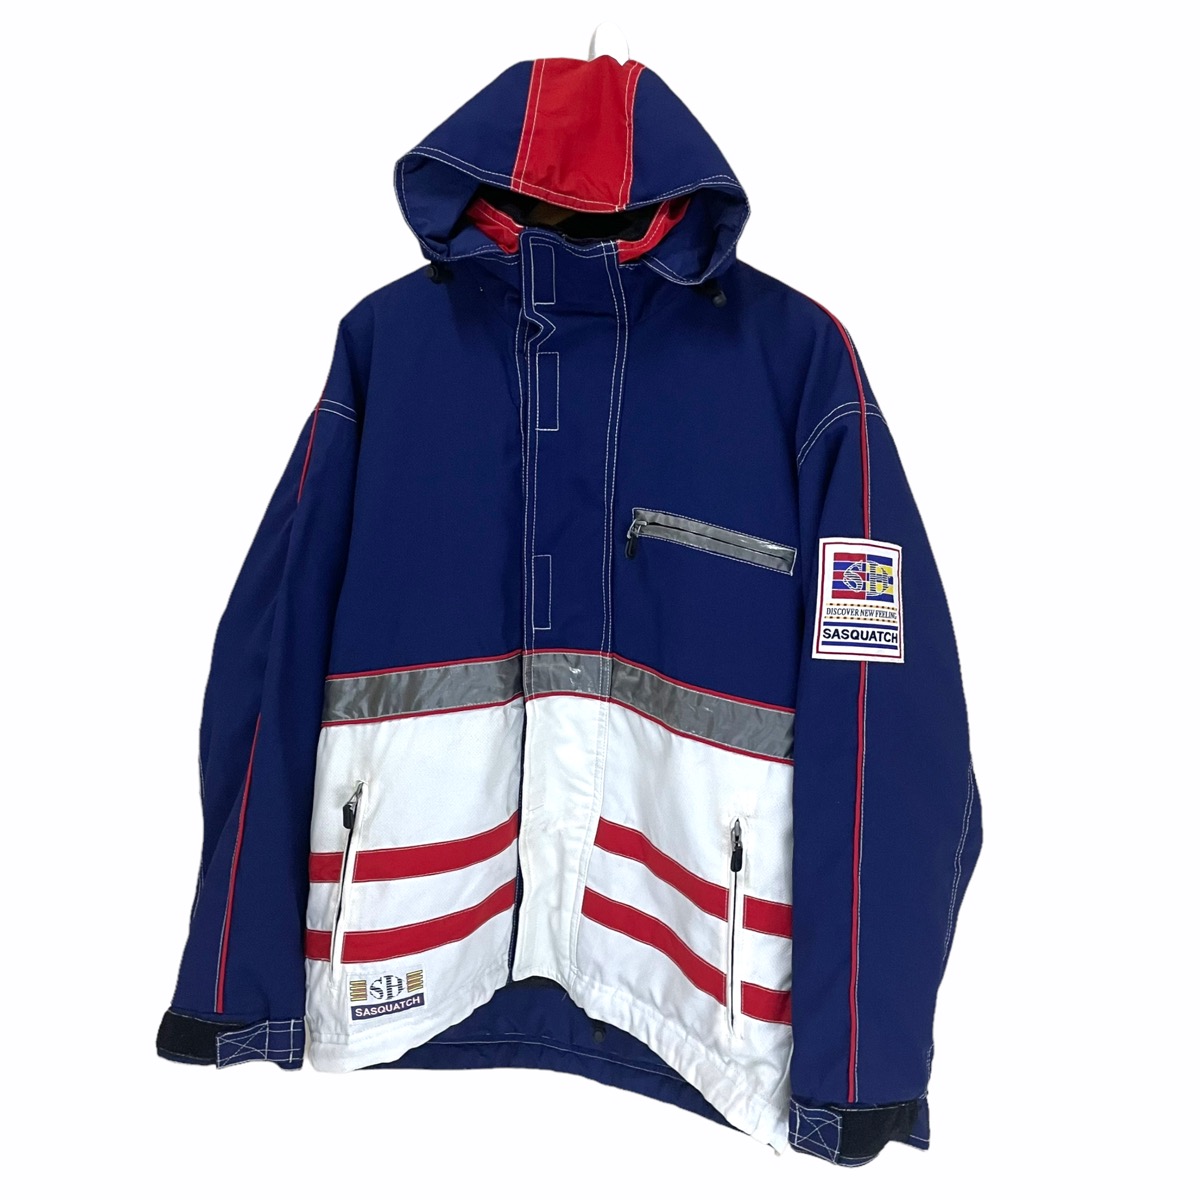 💥 SASQUTCH Outdoor Zipper Hoodie Jacket - 3